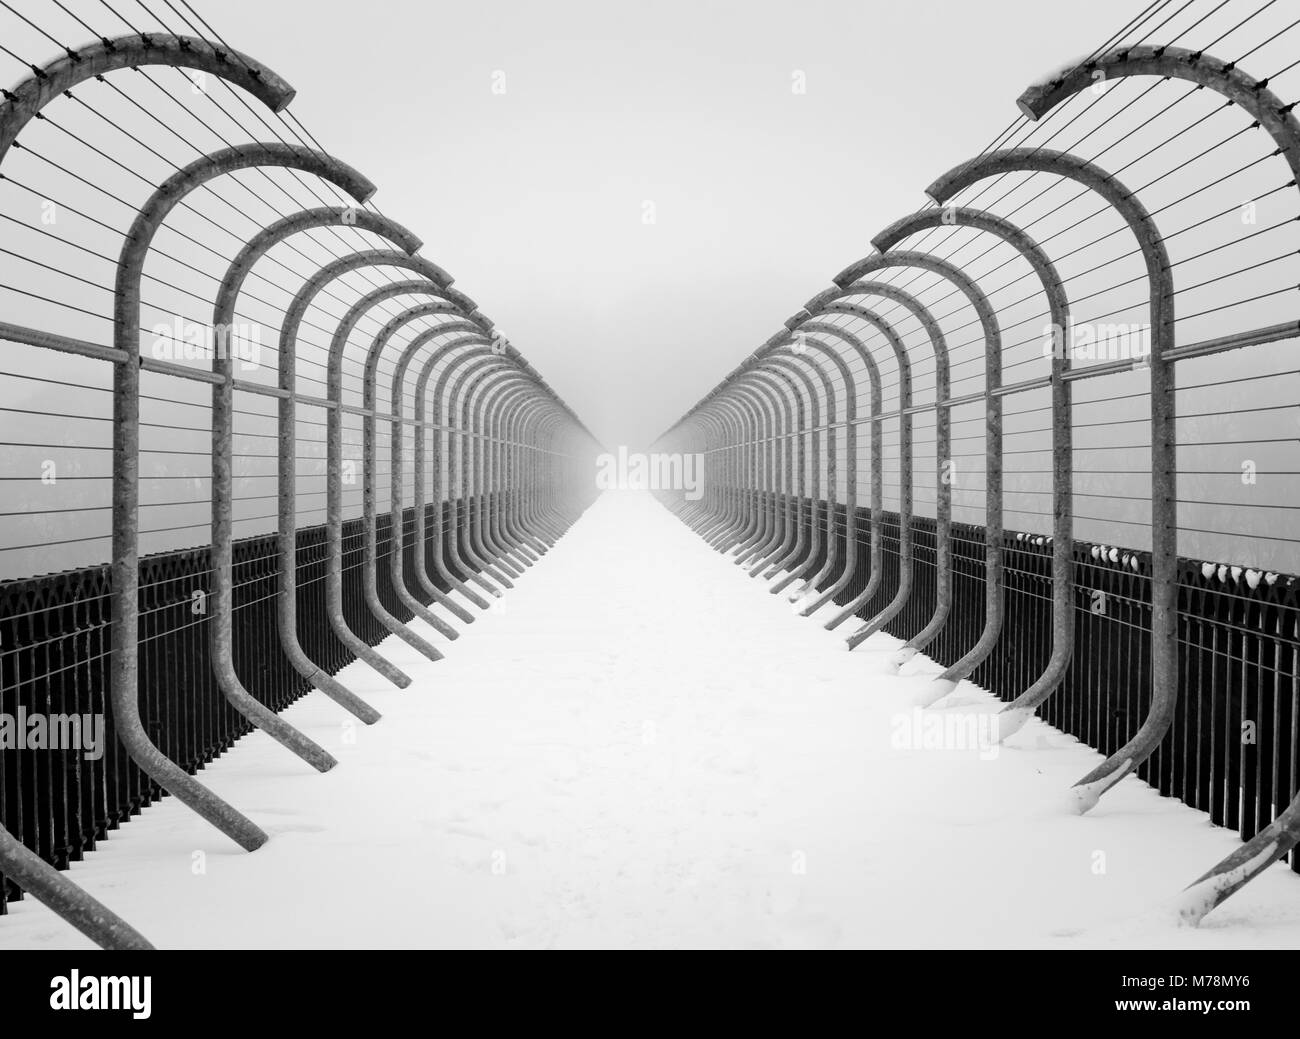 Comme le tunnel en perspective des obstacles sur le pont de Misty paysage d'hiver neige scène minimaliste Banque D'Images